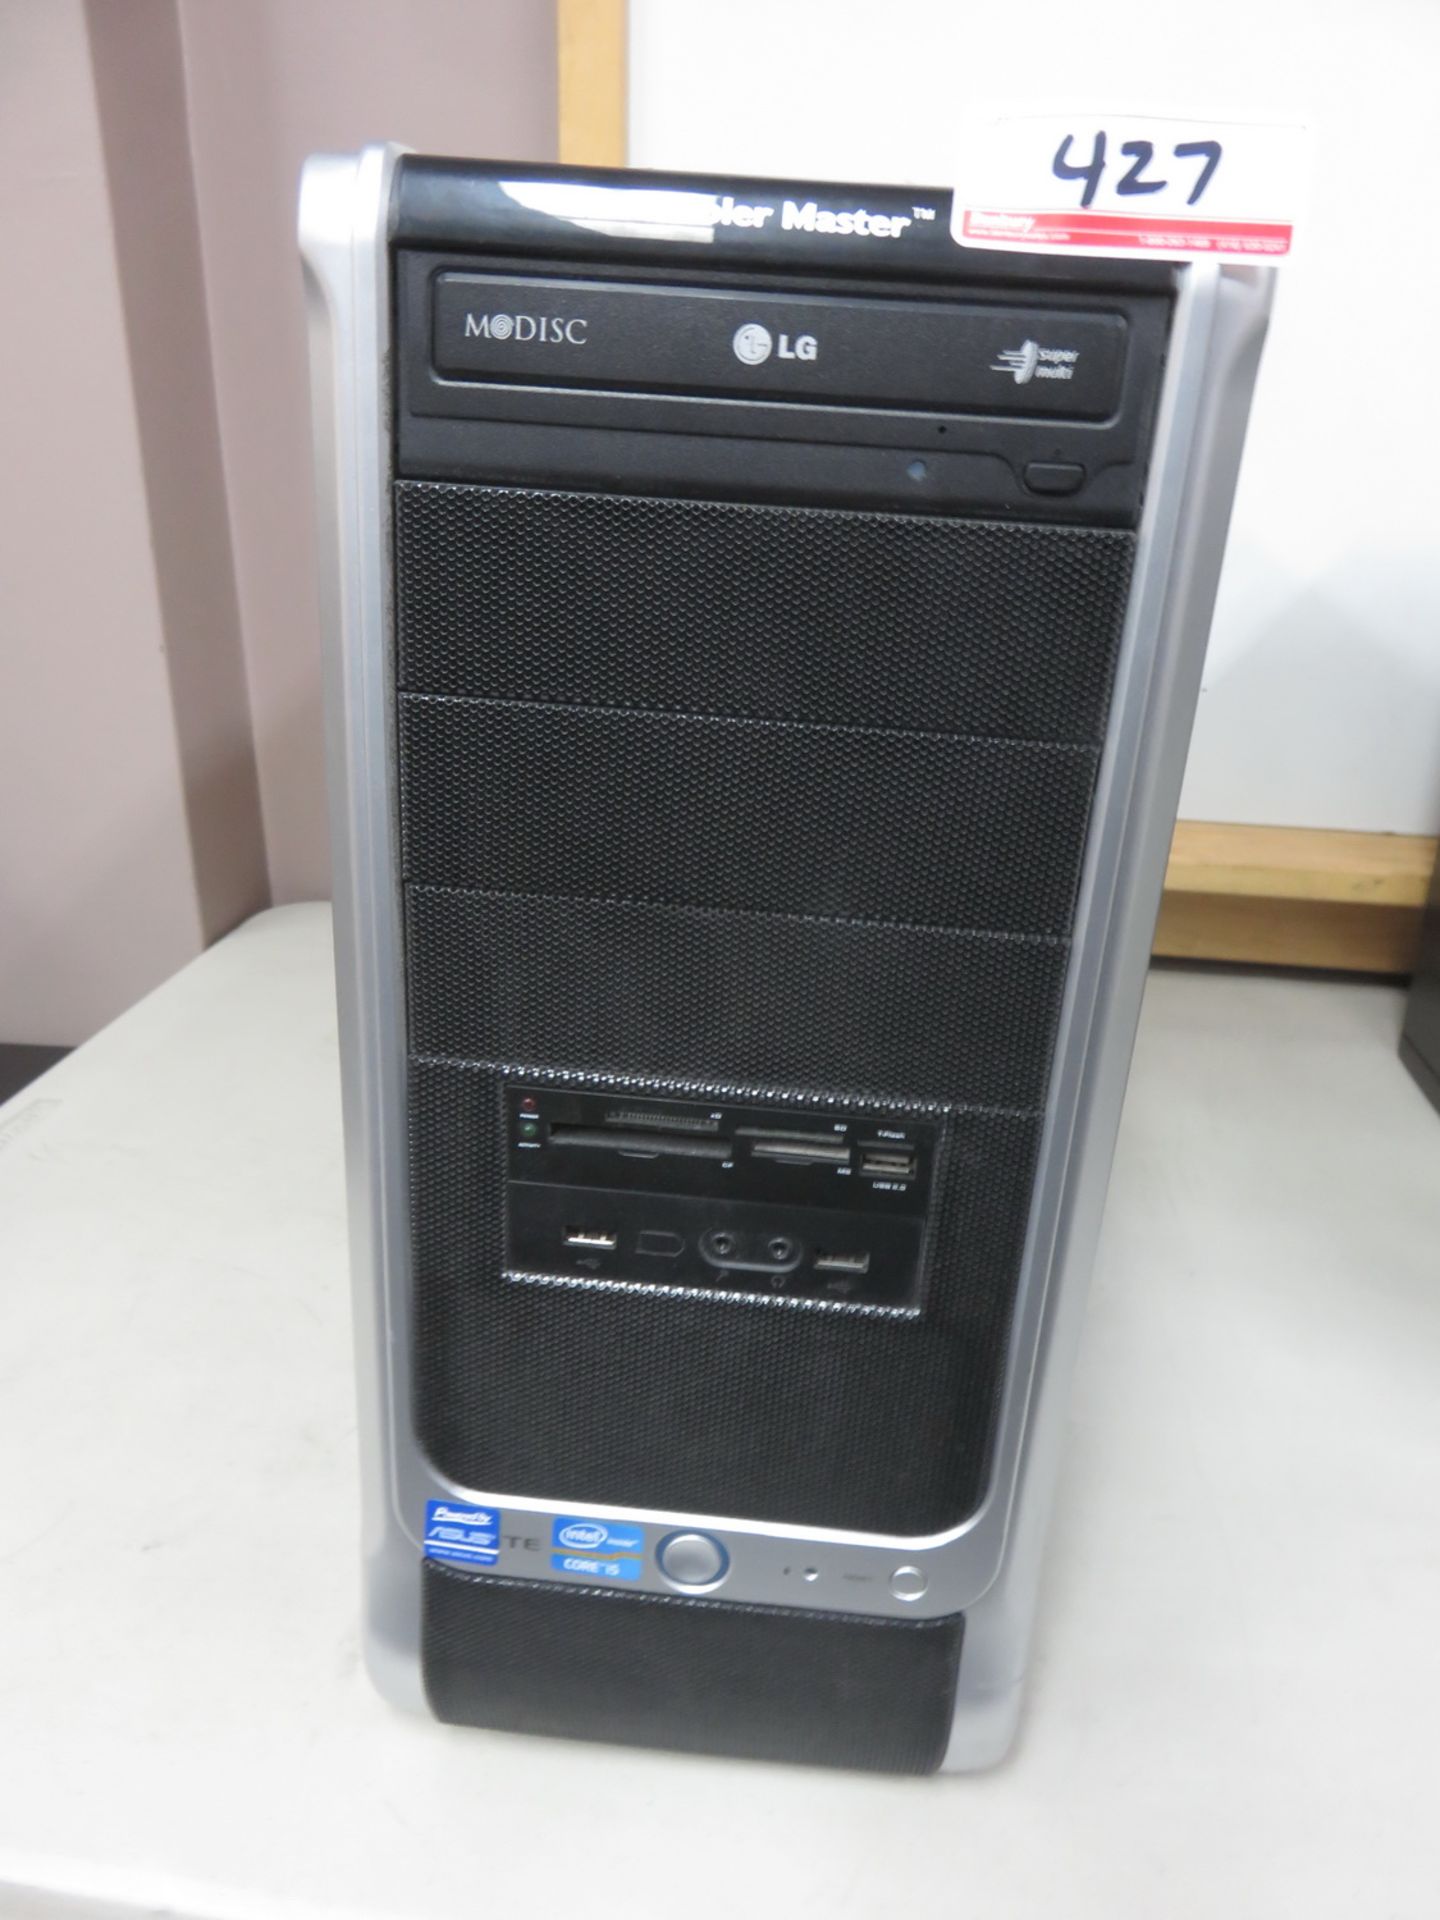 CUSTOM BUILT DESKTOP PC W/ INTEL CORE I5-2400 3.1GHZ PROCESSOR, 4GB RAM, 500GB HDD